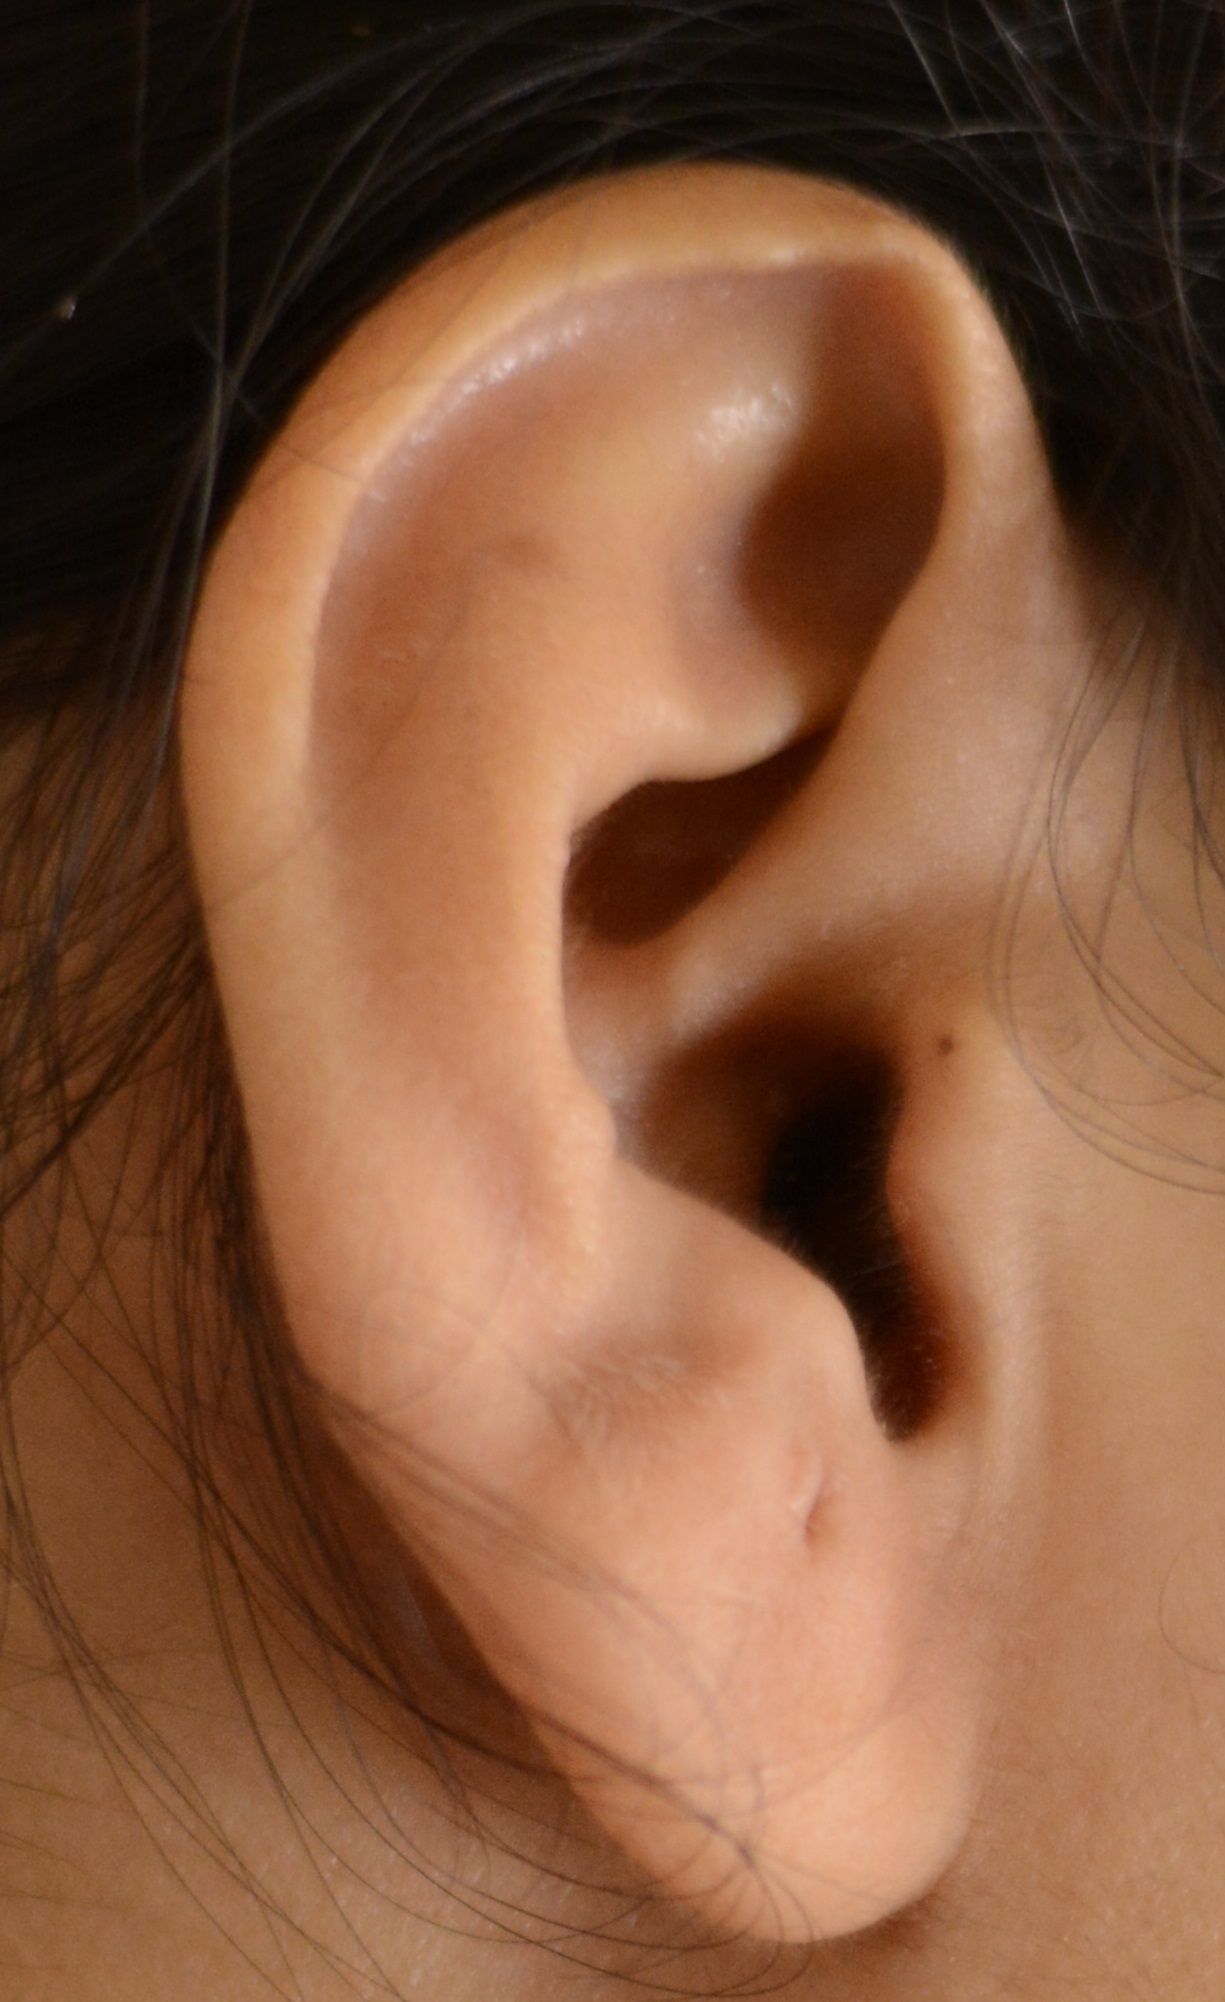 O que significa ear?